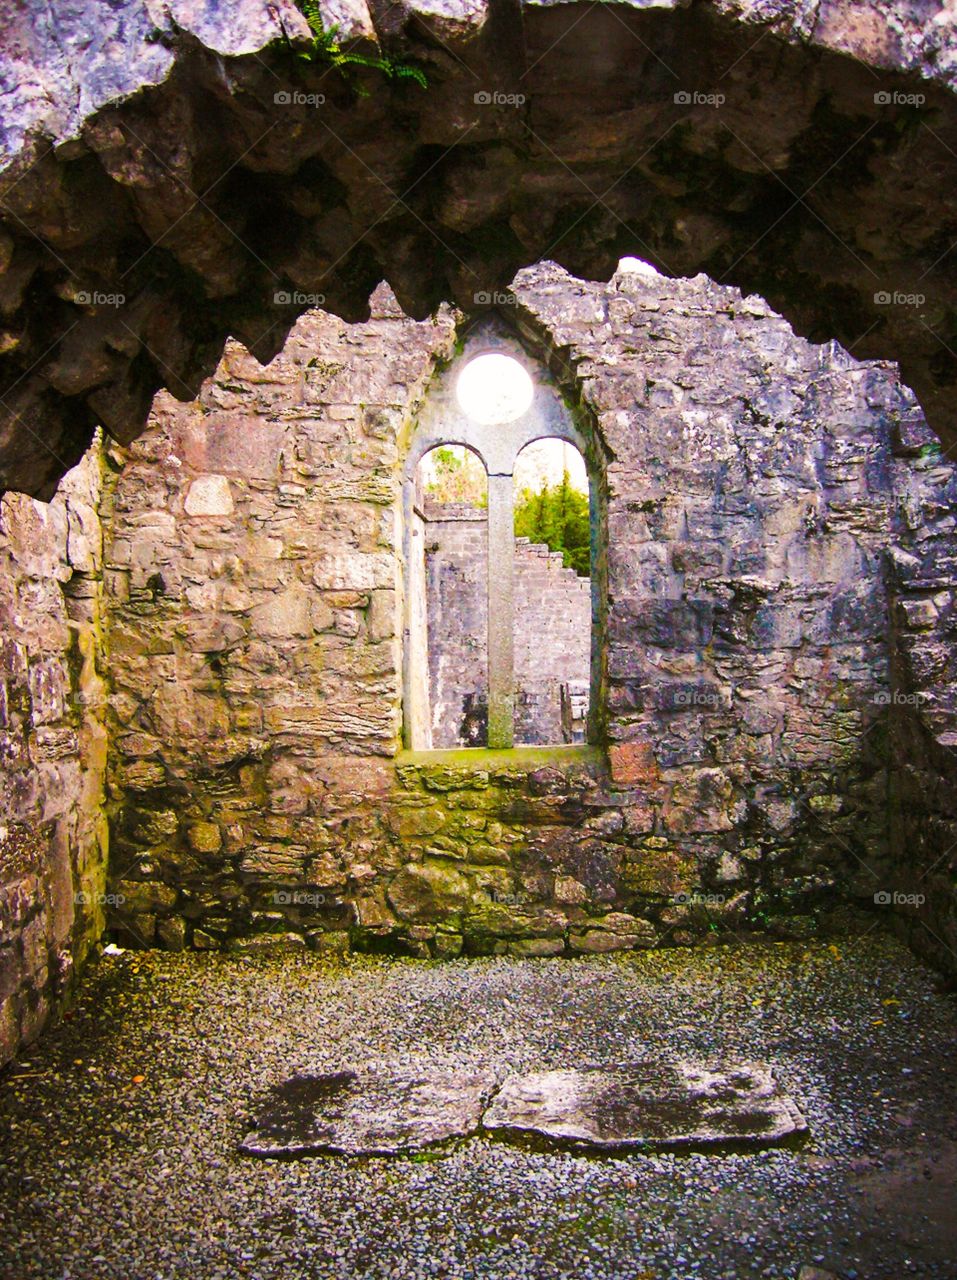 Mystical Window of Ireland. Enchanted window in Ireland